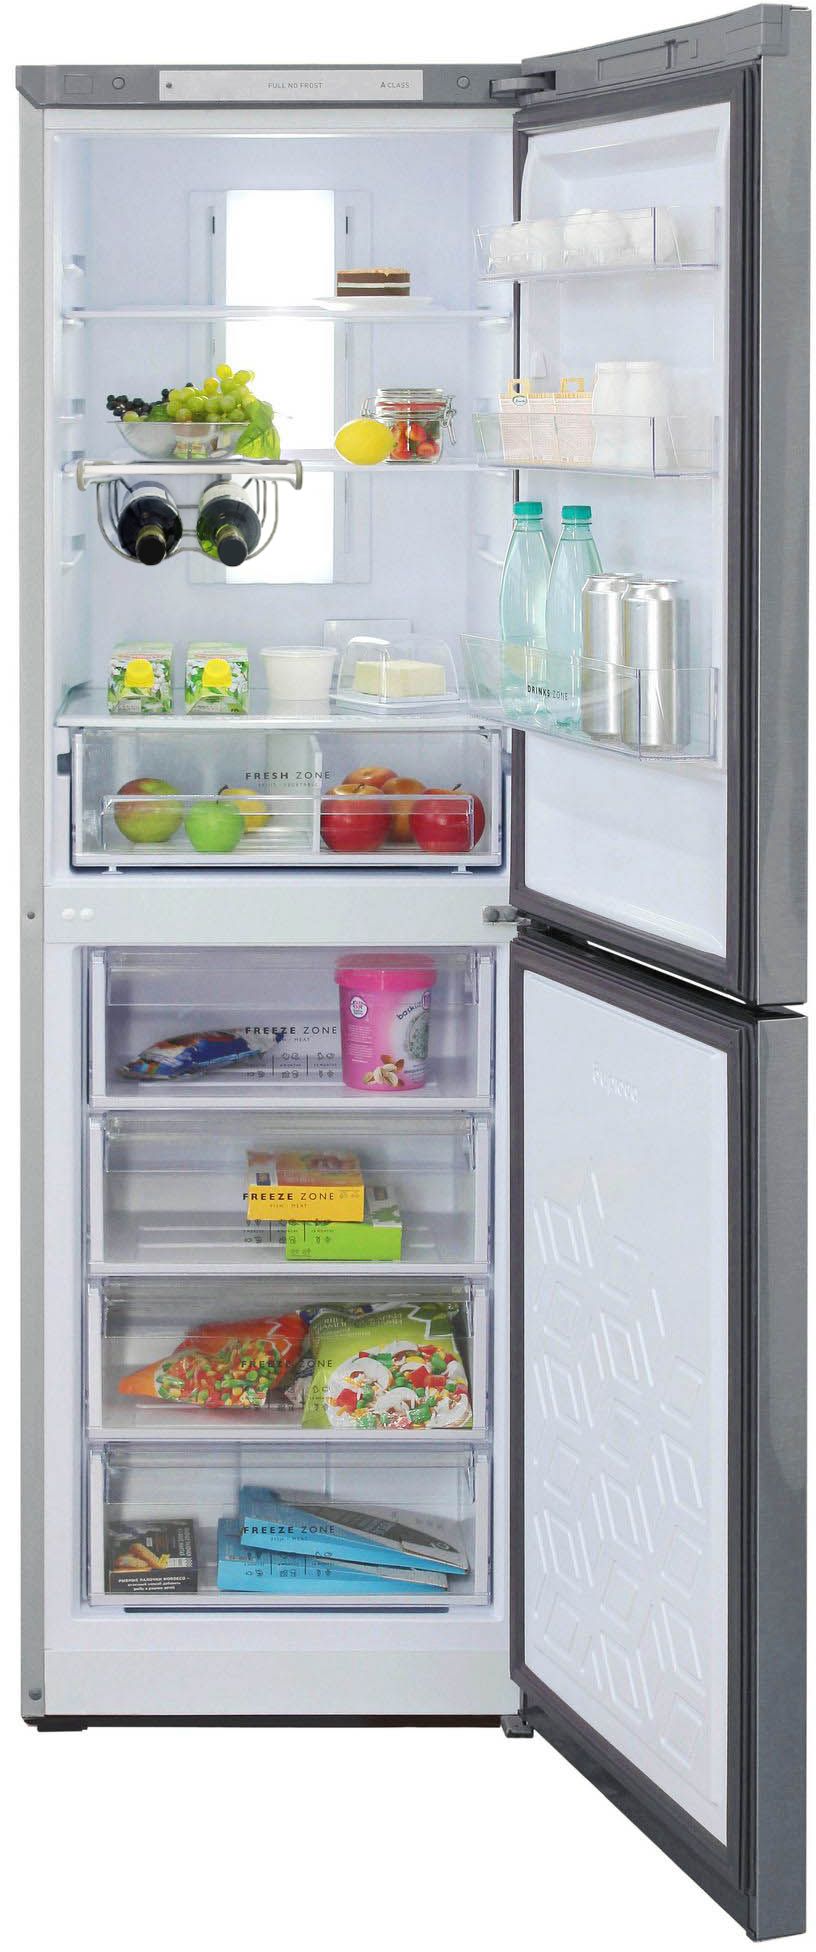 холодильник бирюса 940nf, купить в Красноярске холодильник бирюса 940nf,  купить в Красноярске дешево холодильник бирюса 940nf, купить в Красноярске минимальной цене холодильник бирюса 940nf